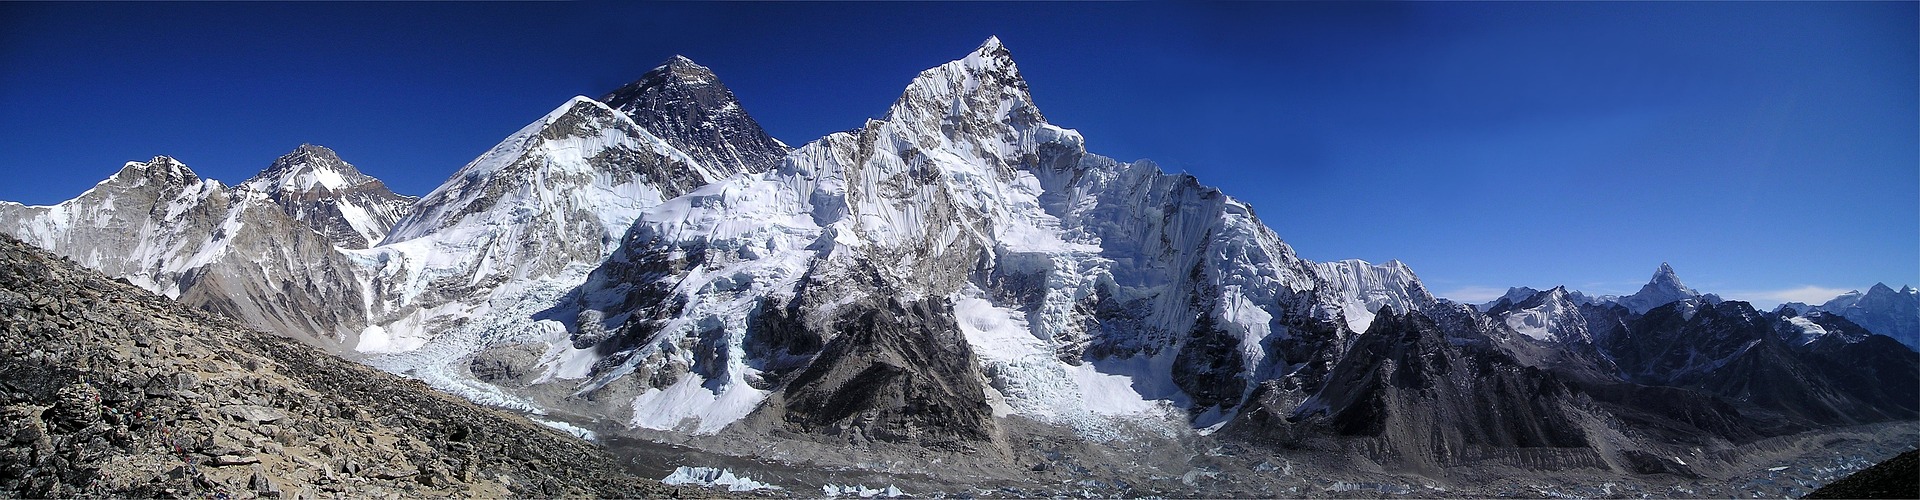 Mount Everest und Nupse